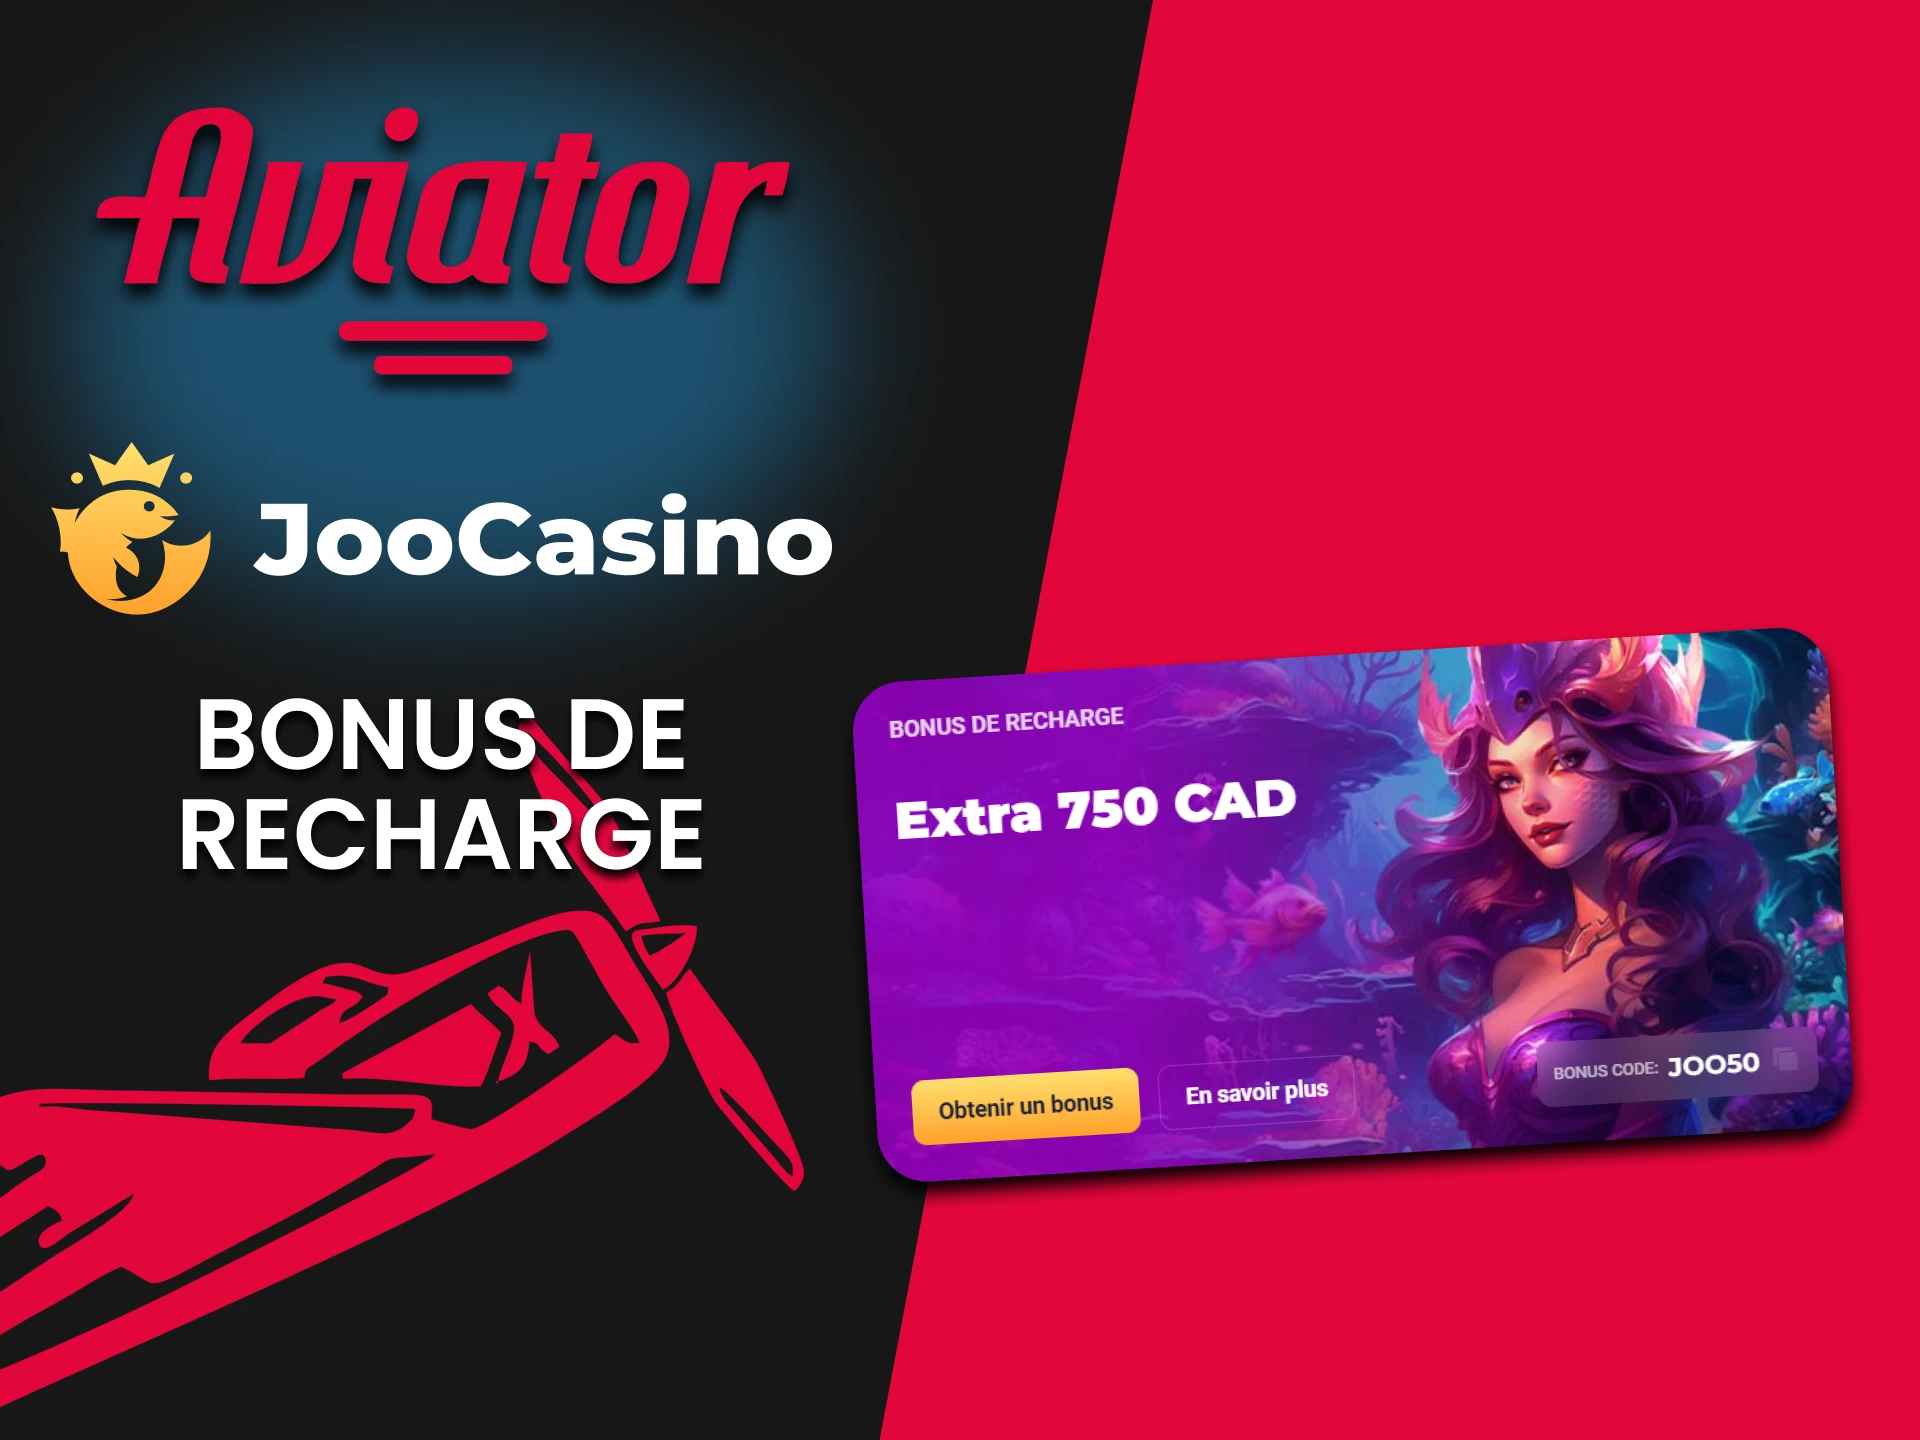 Joo Casino offre un bonus de recharge pour l'Aviator.